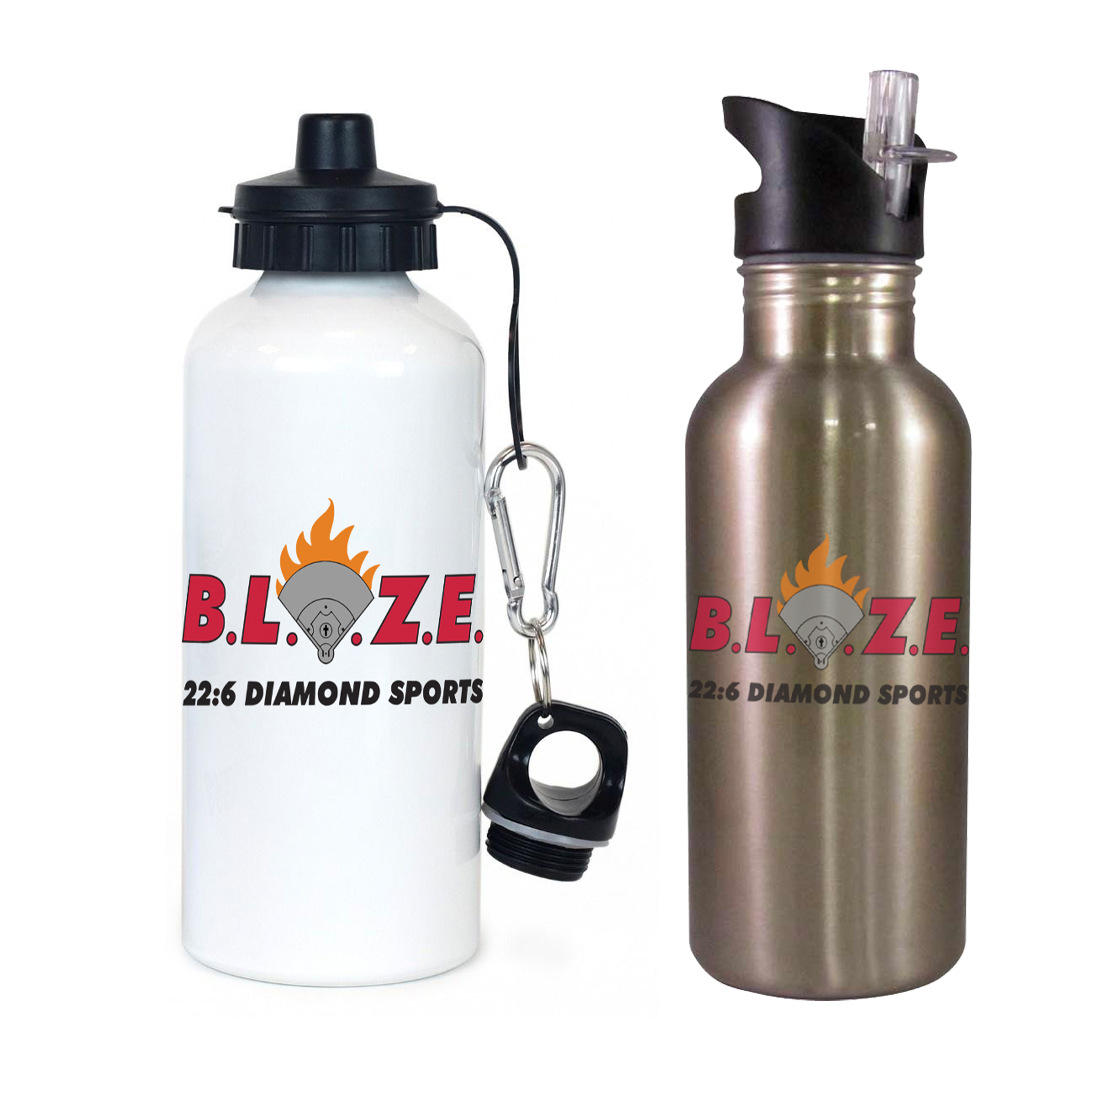 BLAZE 22:6 Diamond Sports Team Water Bottle